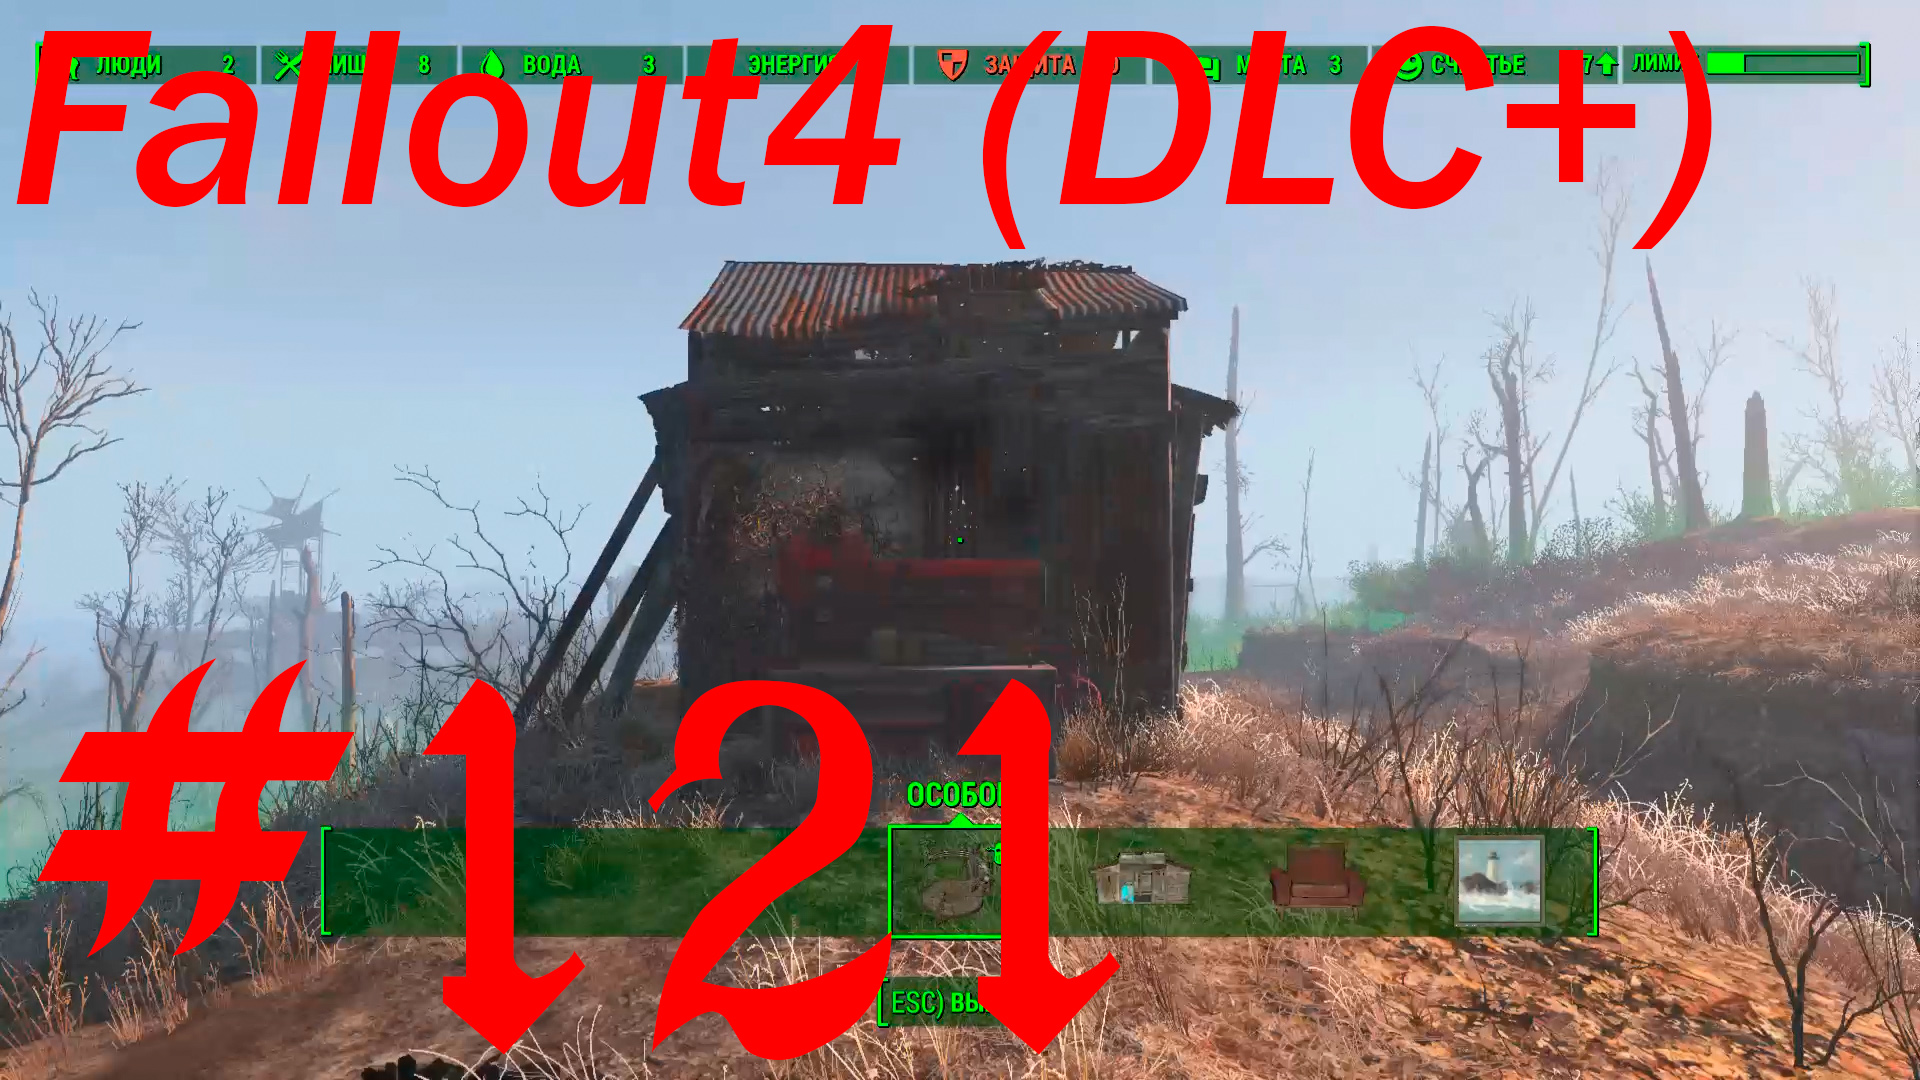 Fallout 4 + DLC, прохождение, часть 121